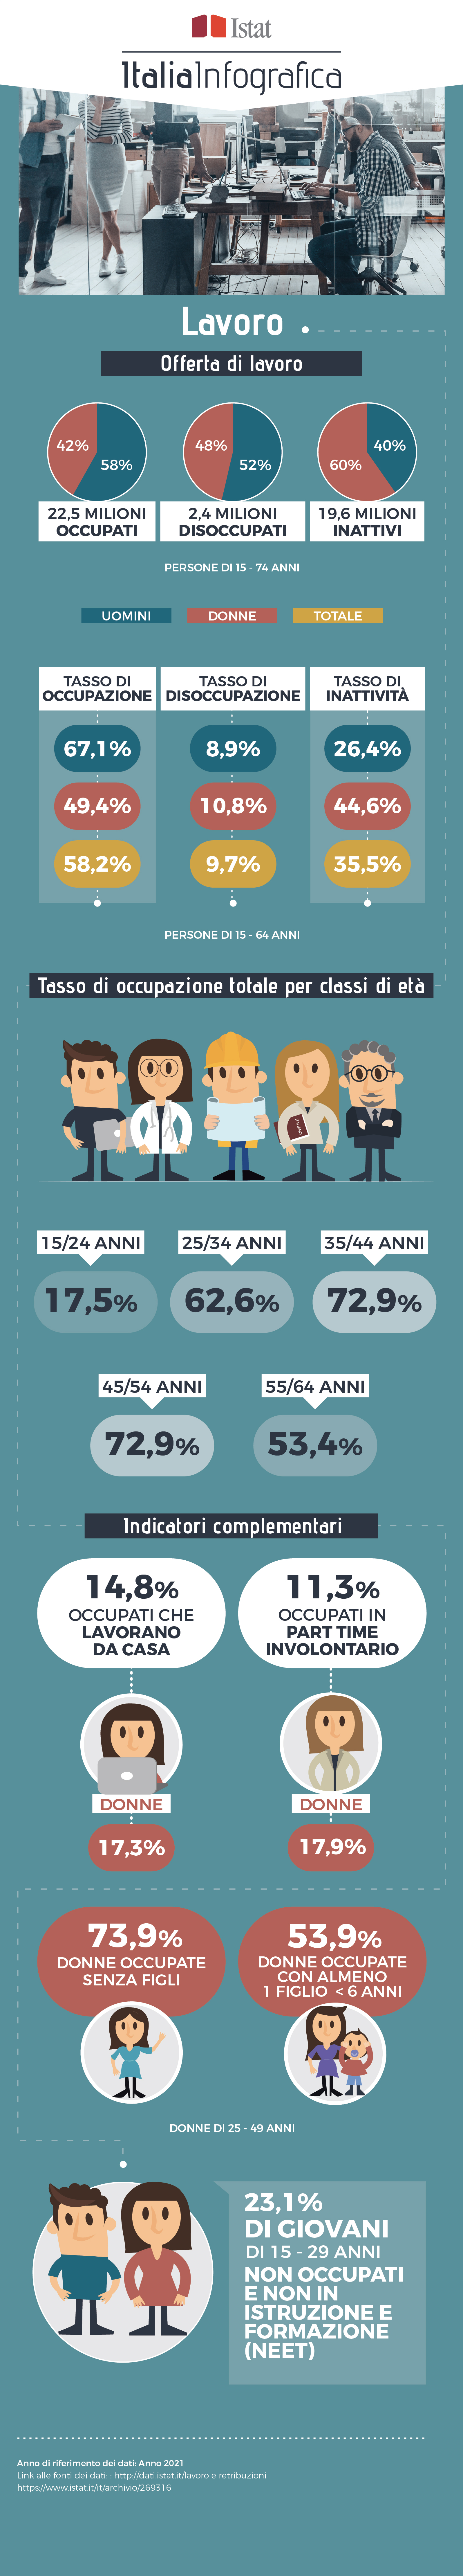 immagine di infografica con titolo ItaliaInfografica-lavoro